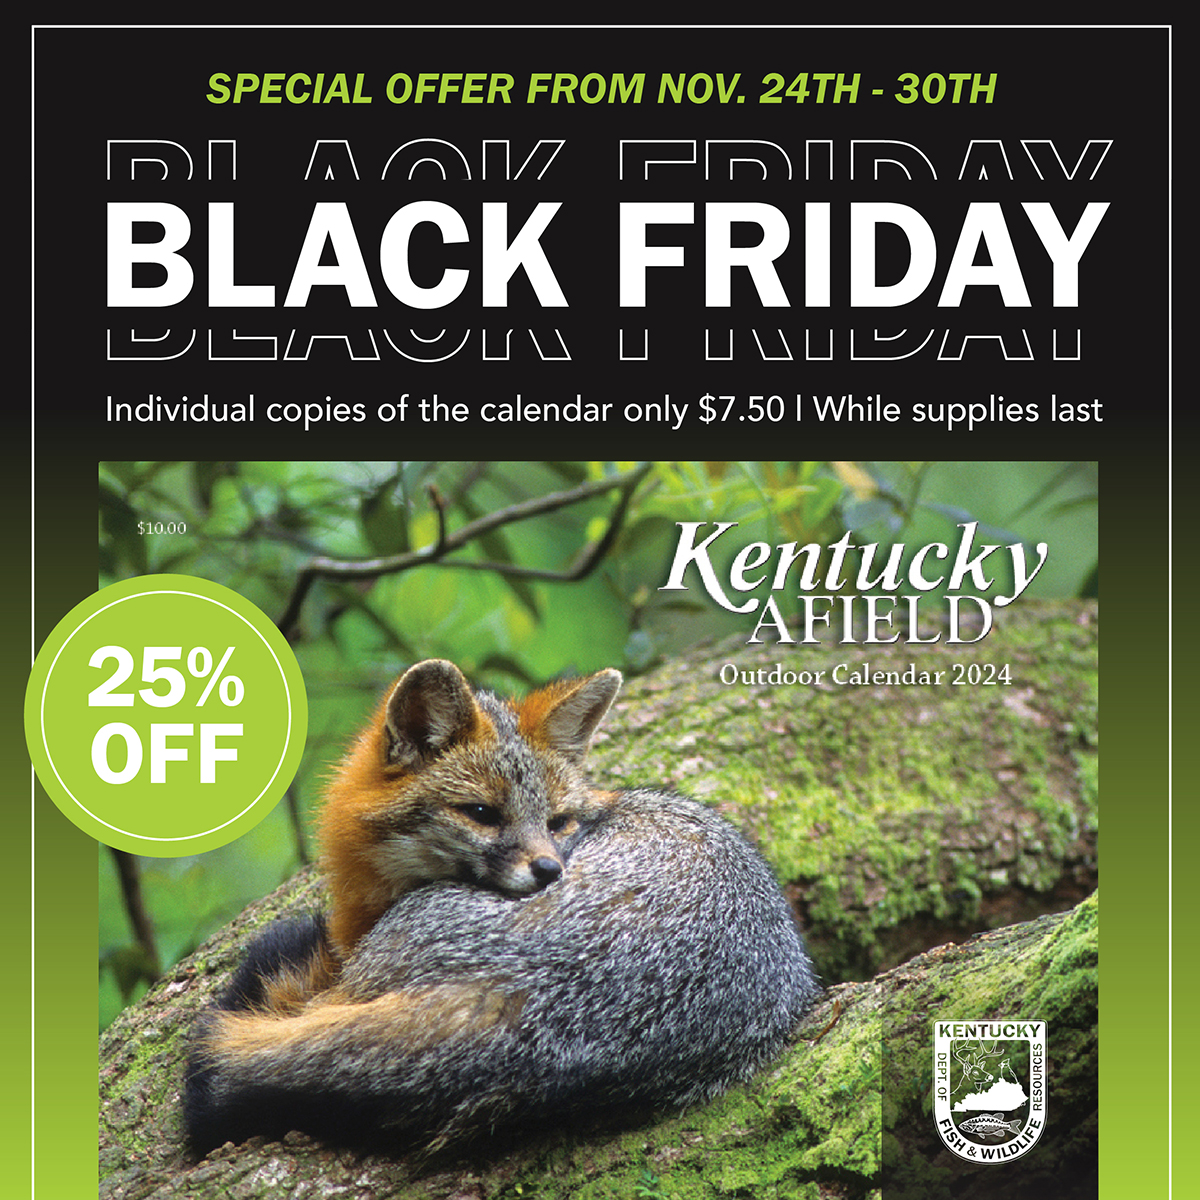 Kentucky Afield Outdoor Calendar Black Friday promo